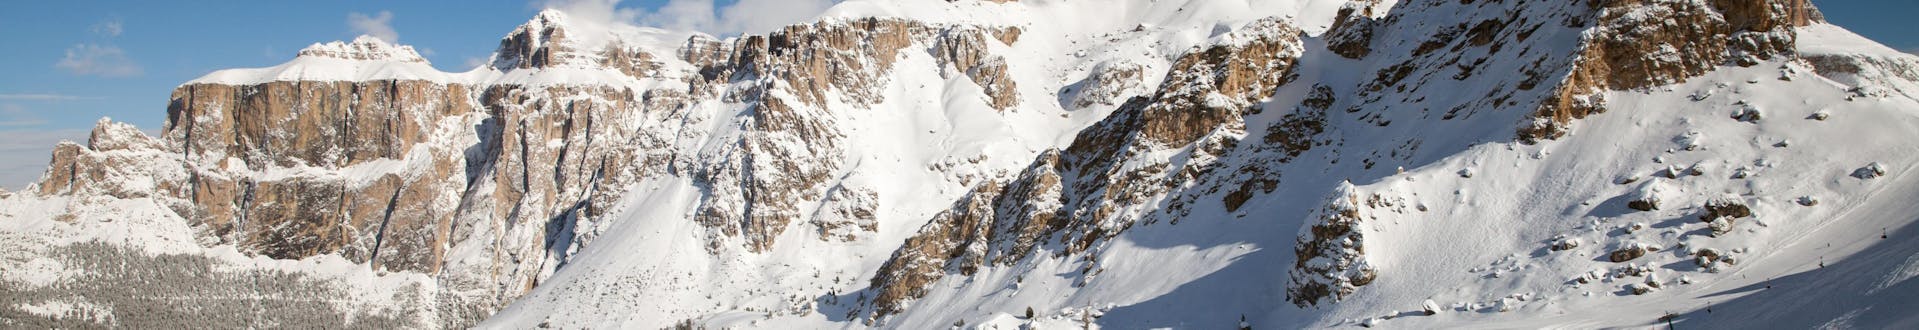 Domaine skiable de Canazei, en Italie, où vous pouvez réserver des leçons de ski.